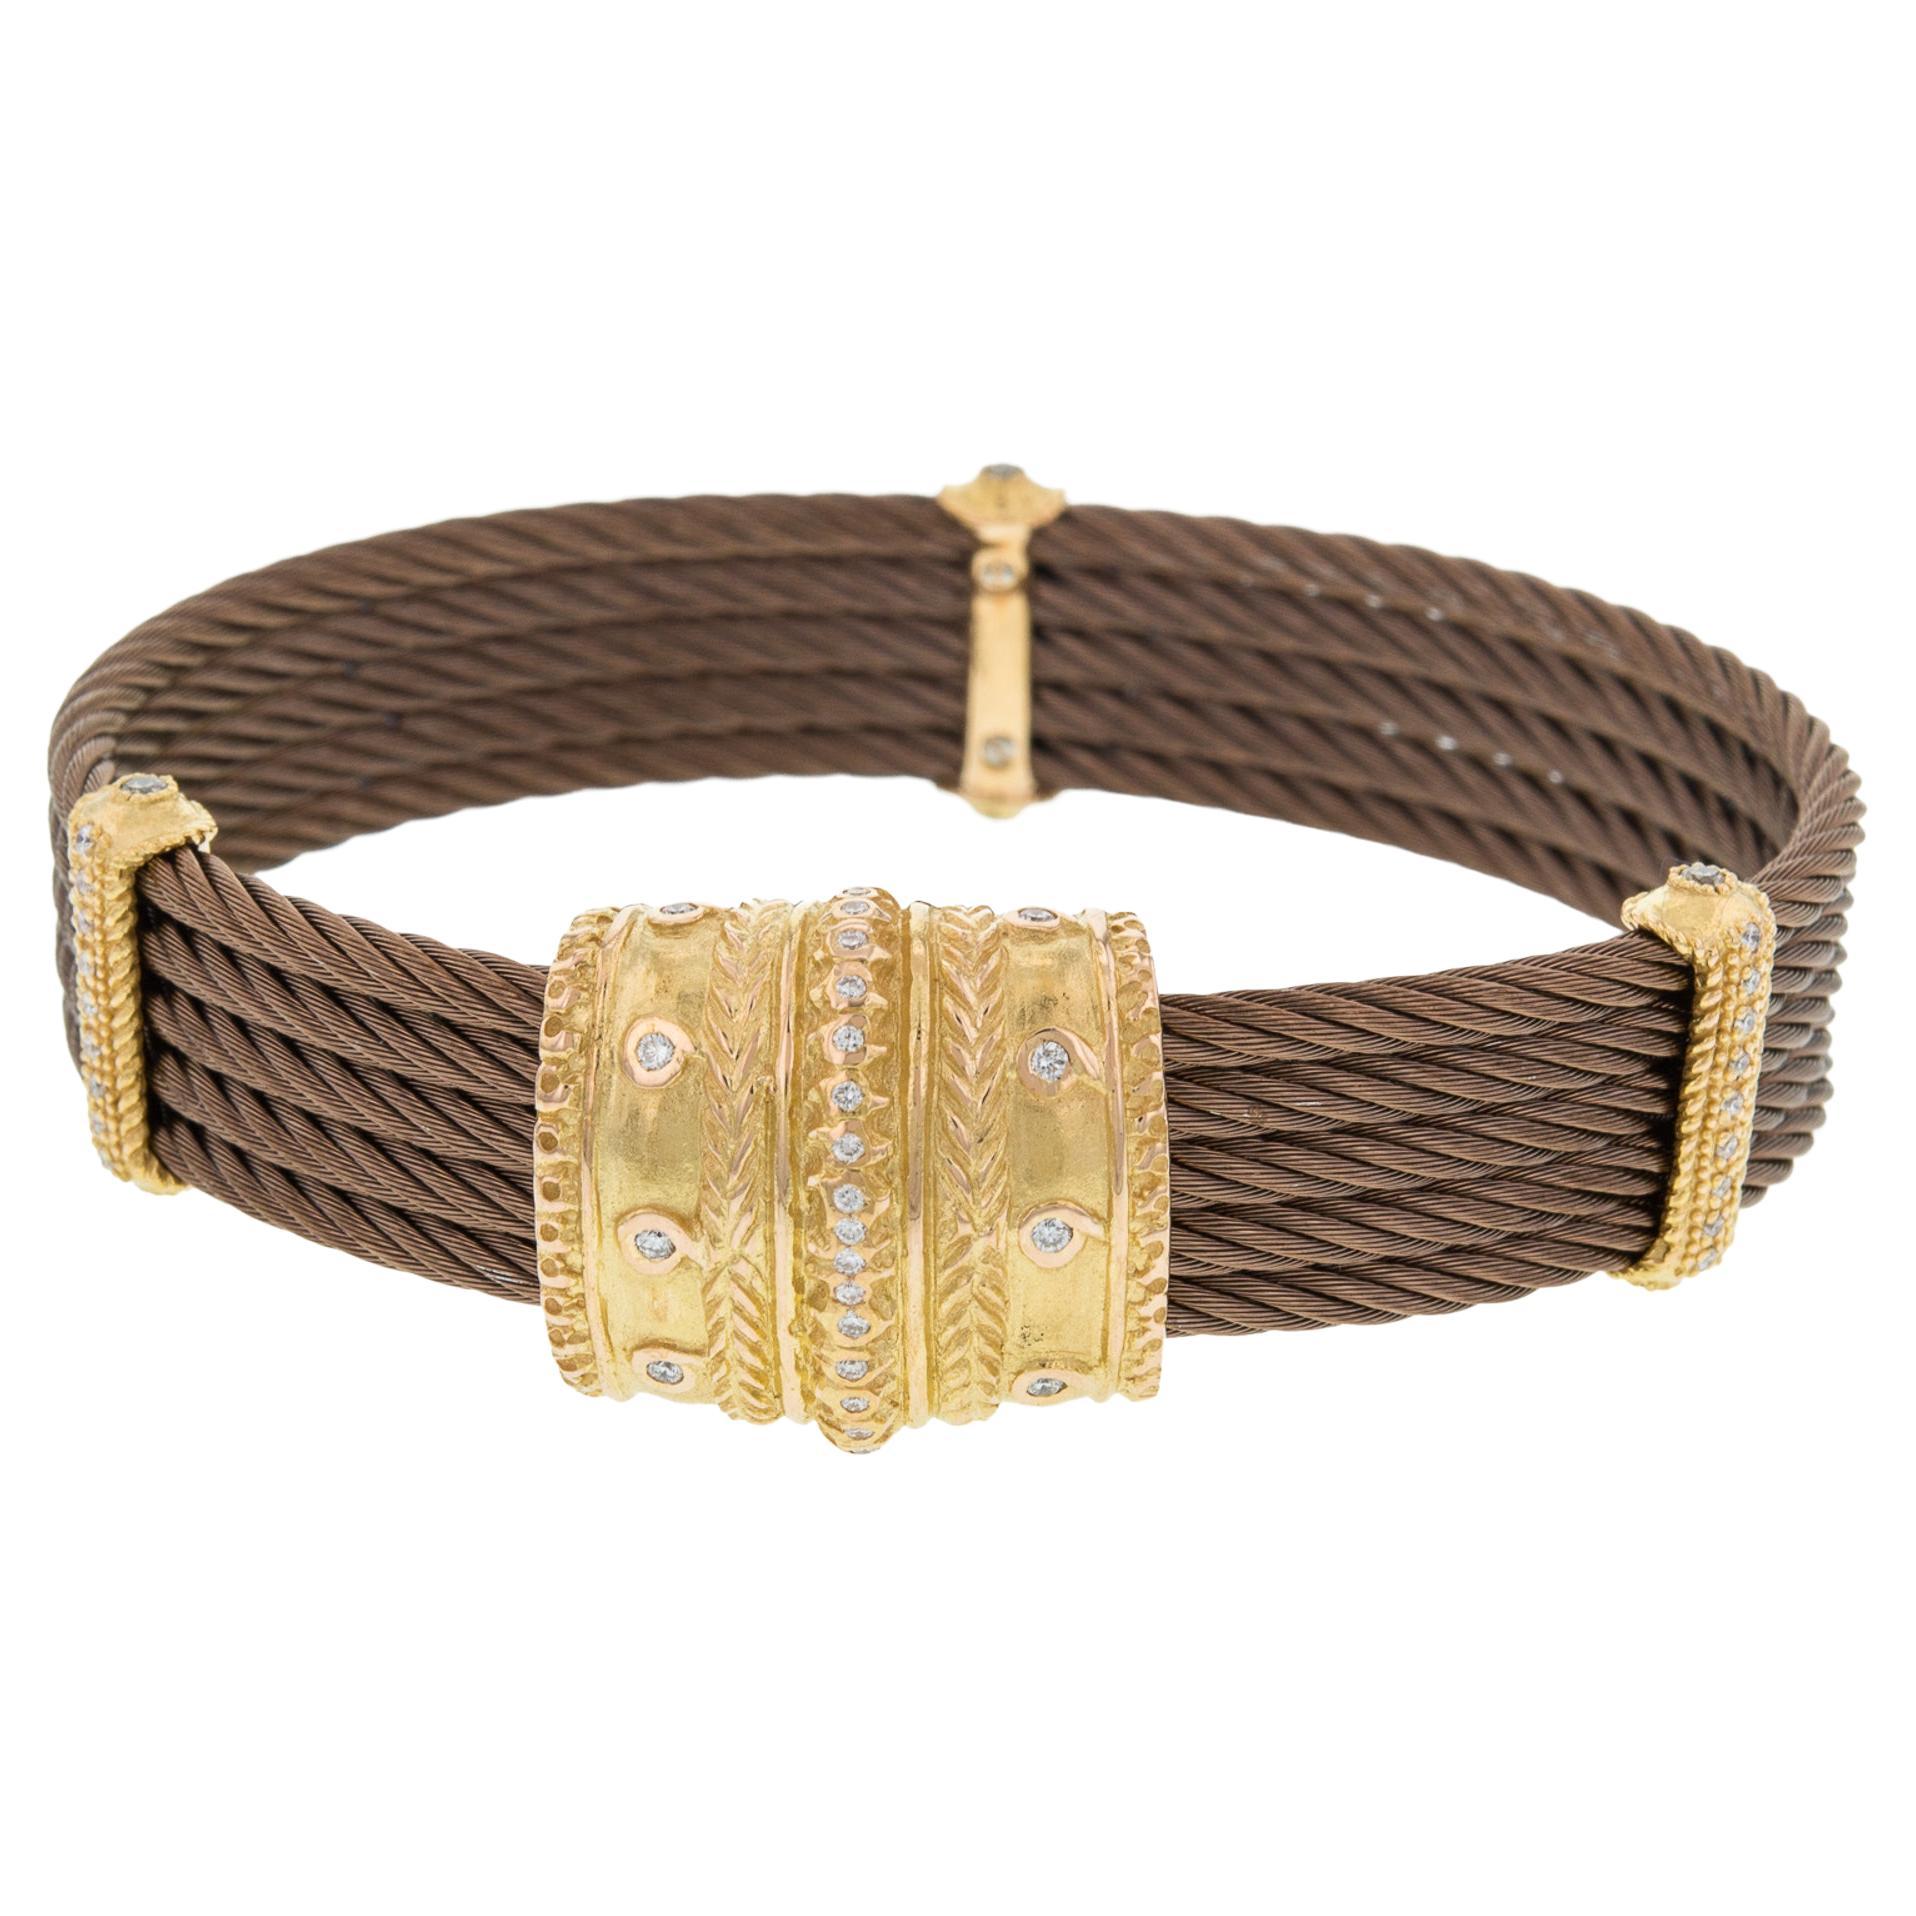 Charriol Celtique Cable Diamond Ladies Bracelet 18k Yellow Gold 0.42cttw